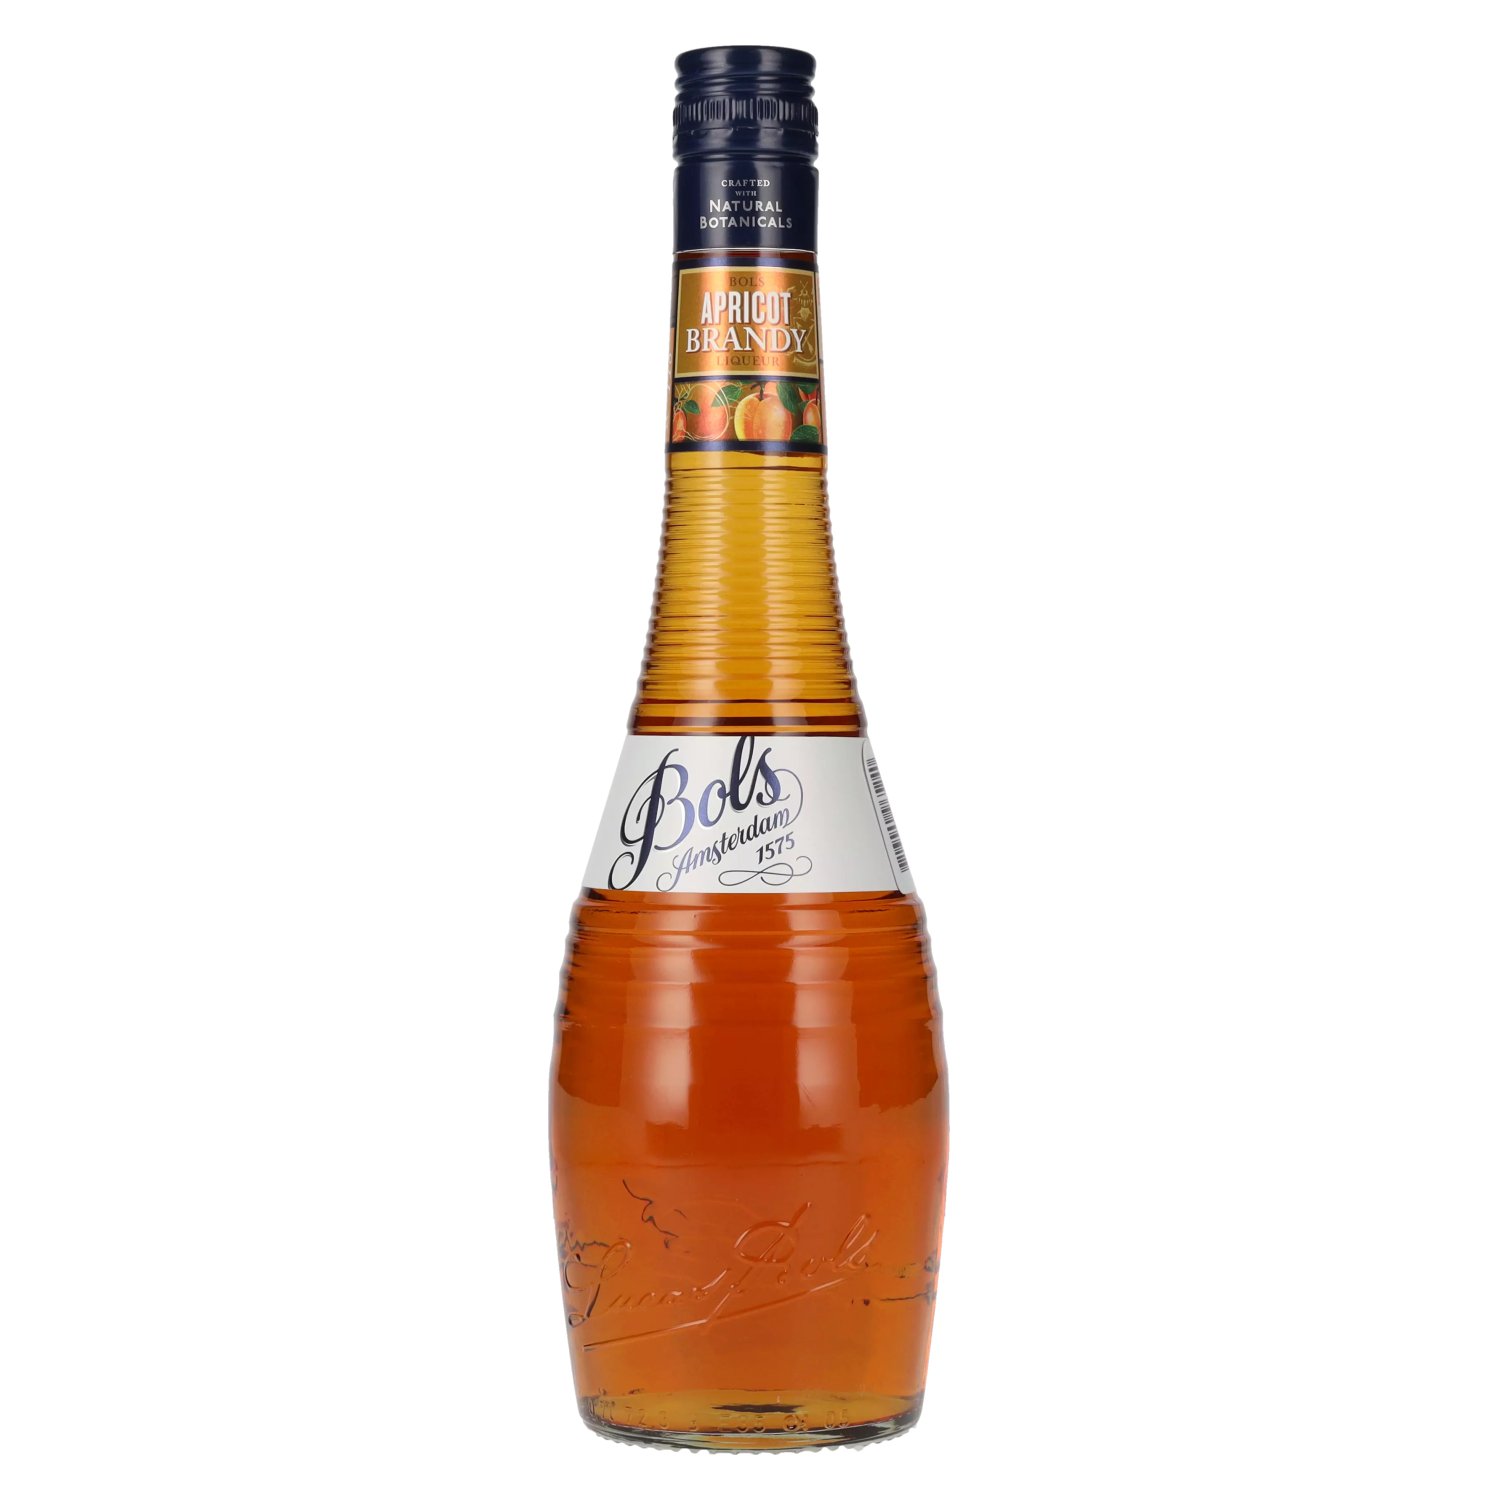 Bols Apricot Brandy Liqueur 24% 0,7l delicando Vol. 